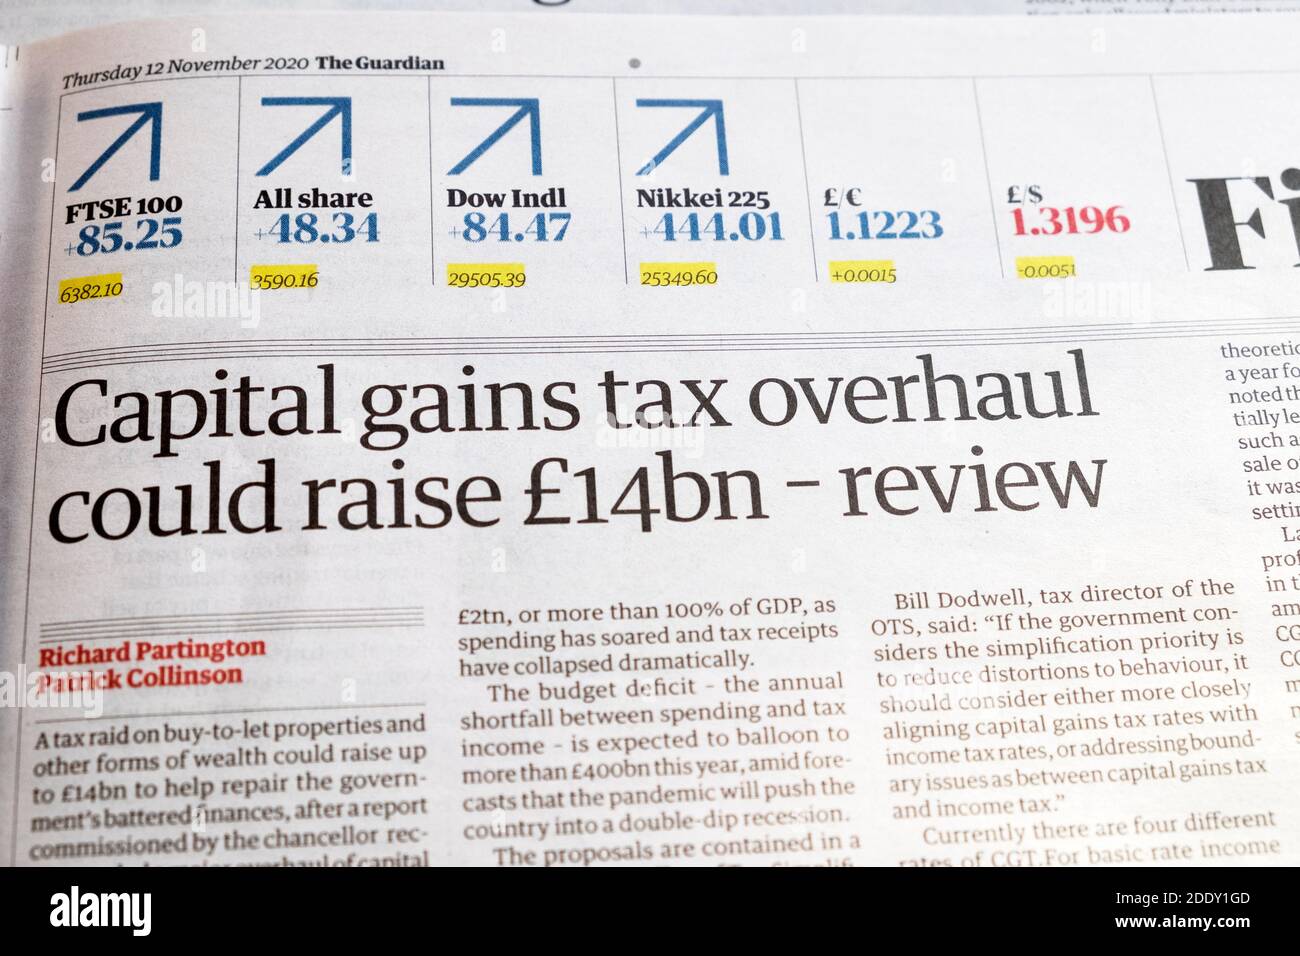 Guardian Financial page titre du journal article 12 novembre 2020 'Capital Une refonte de l'impôt sur les bénéfices pourrait augmenter de 14 milliards de livres - bilan » à Londres Angleterre Royaume-Uni Banque D'Images